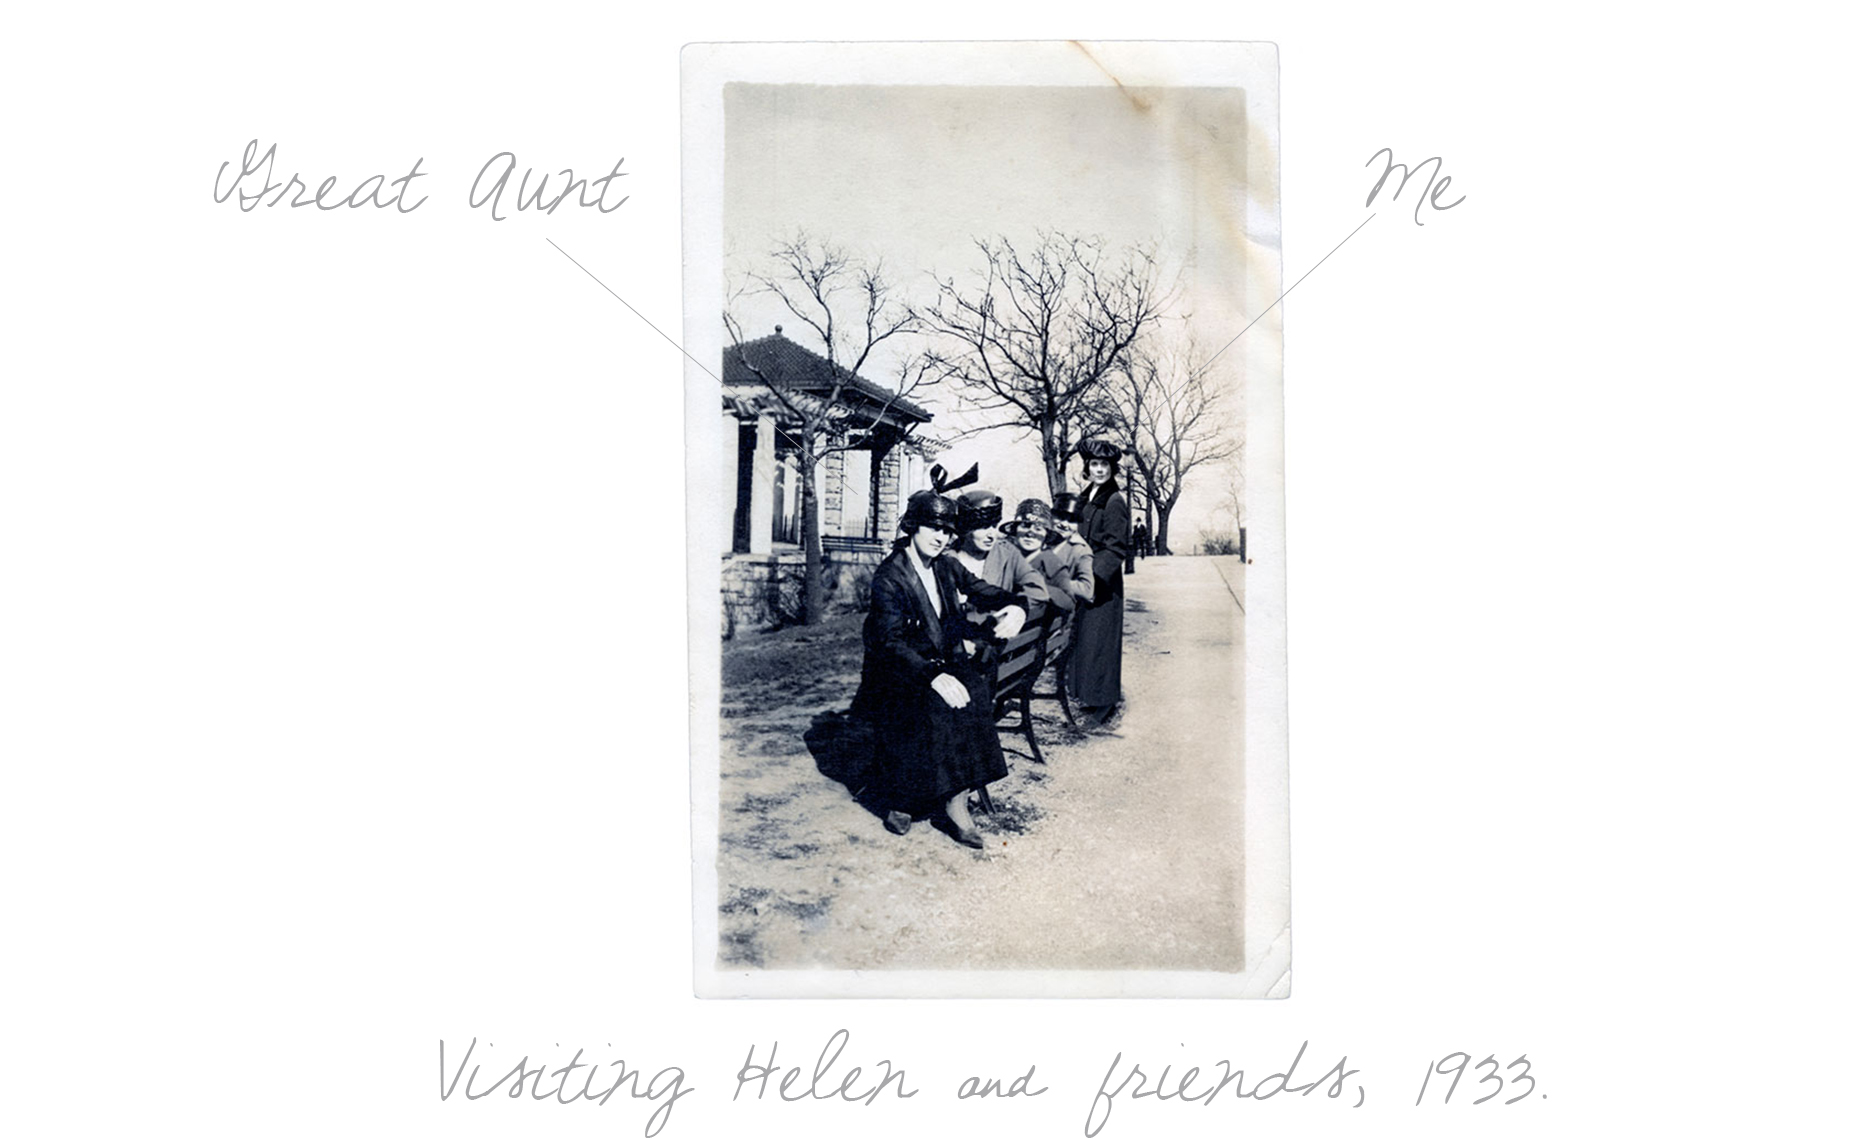 Visiting Helen, 1933